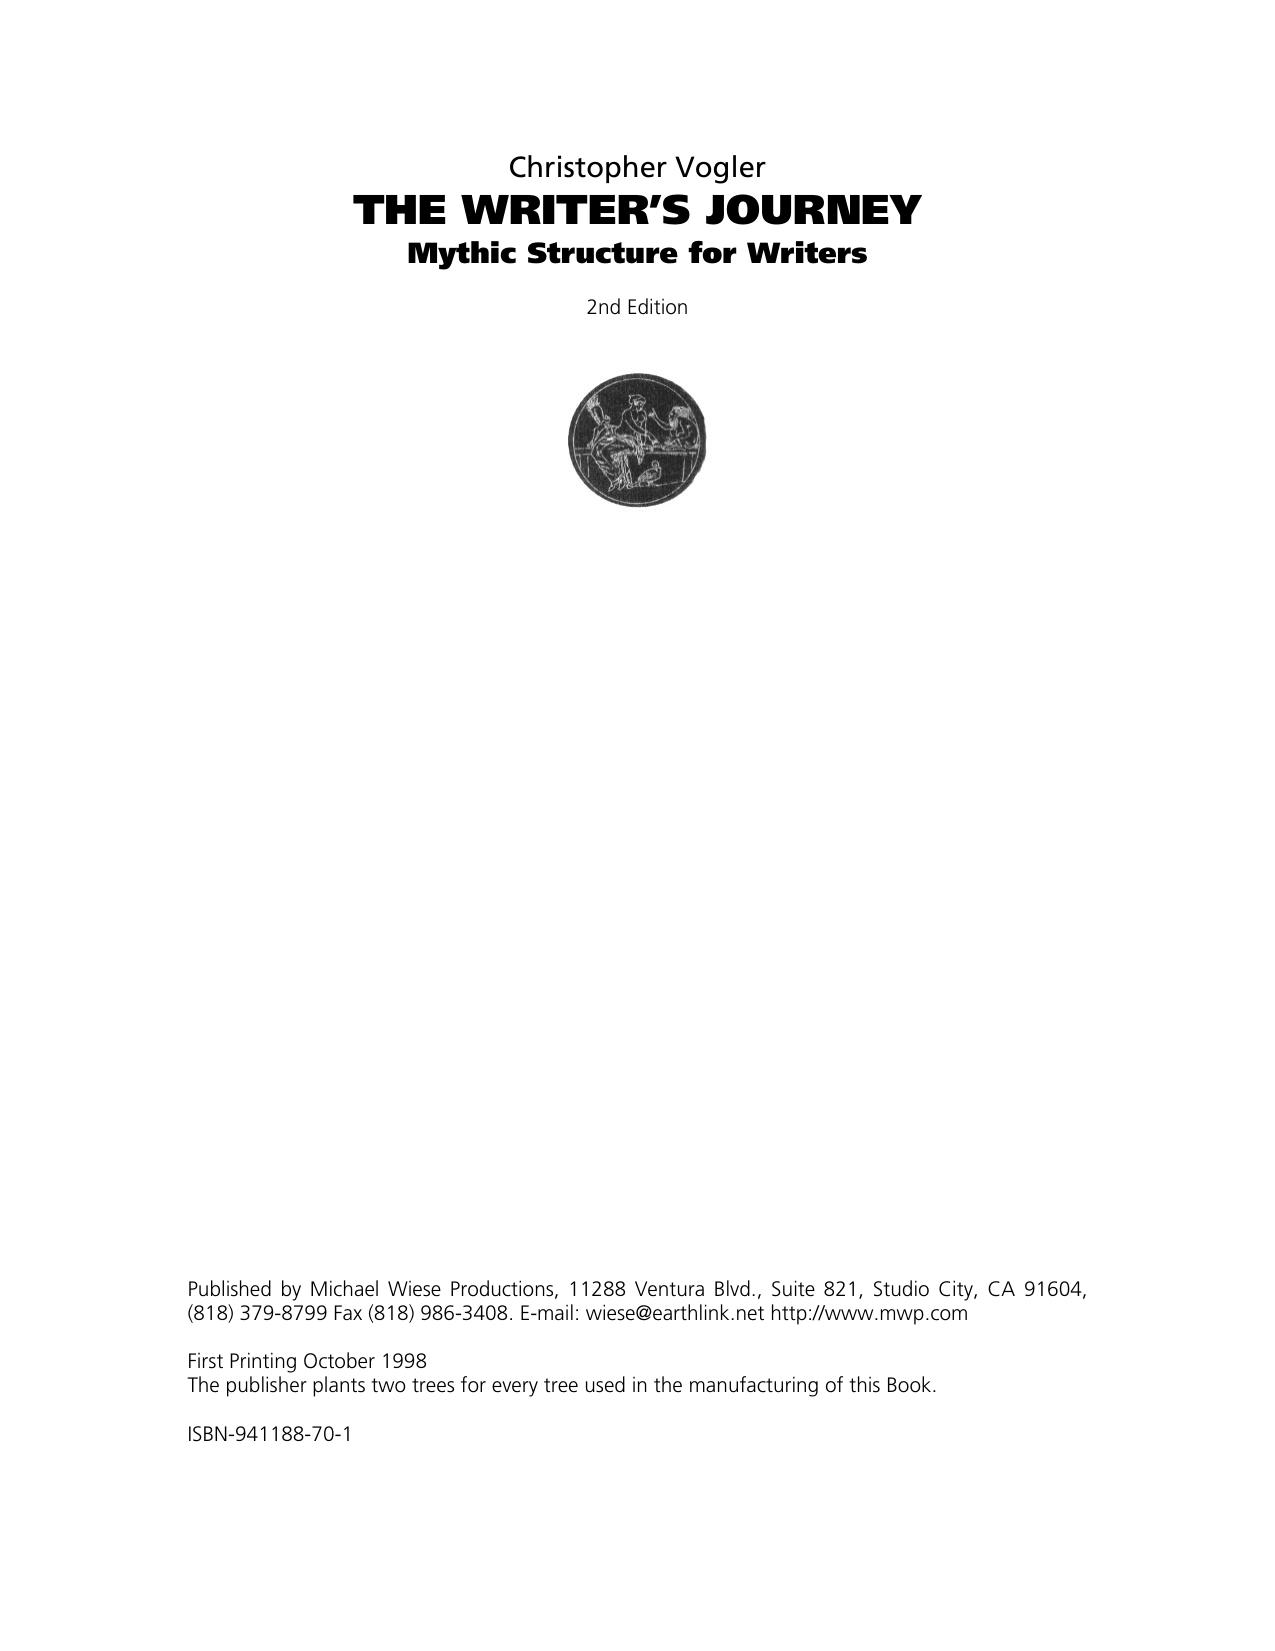 the writer's journey vogler